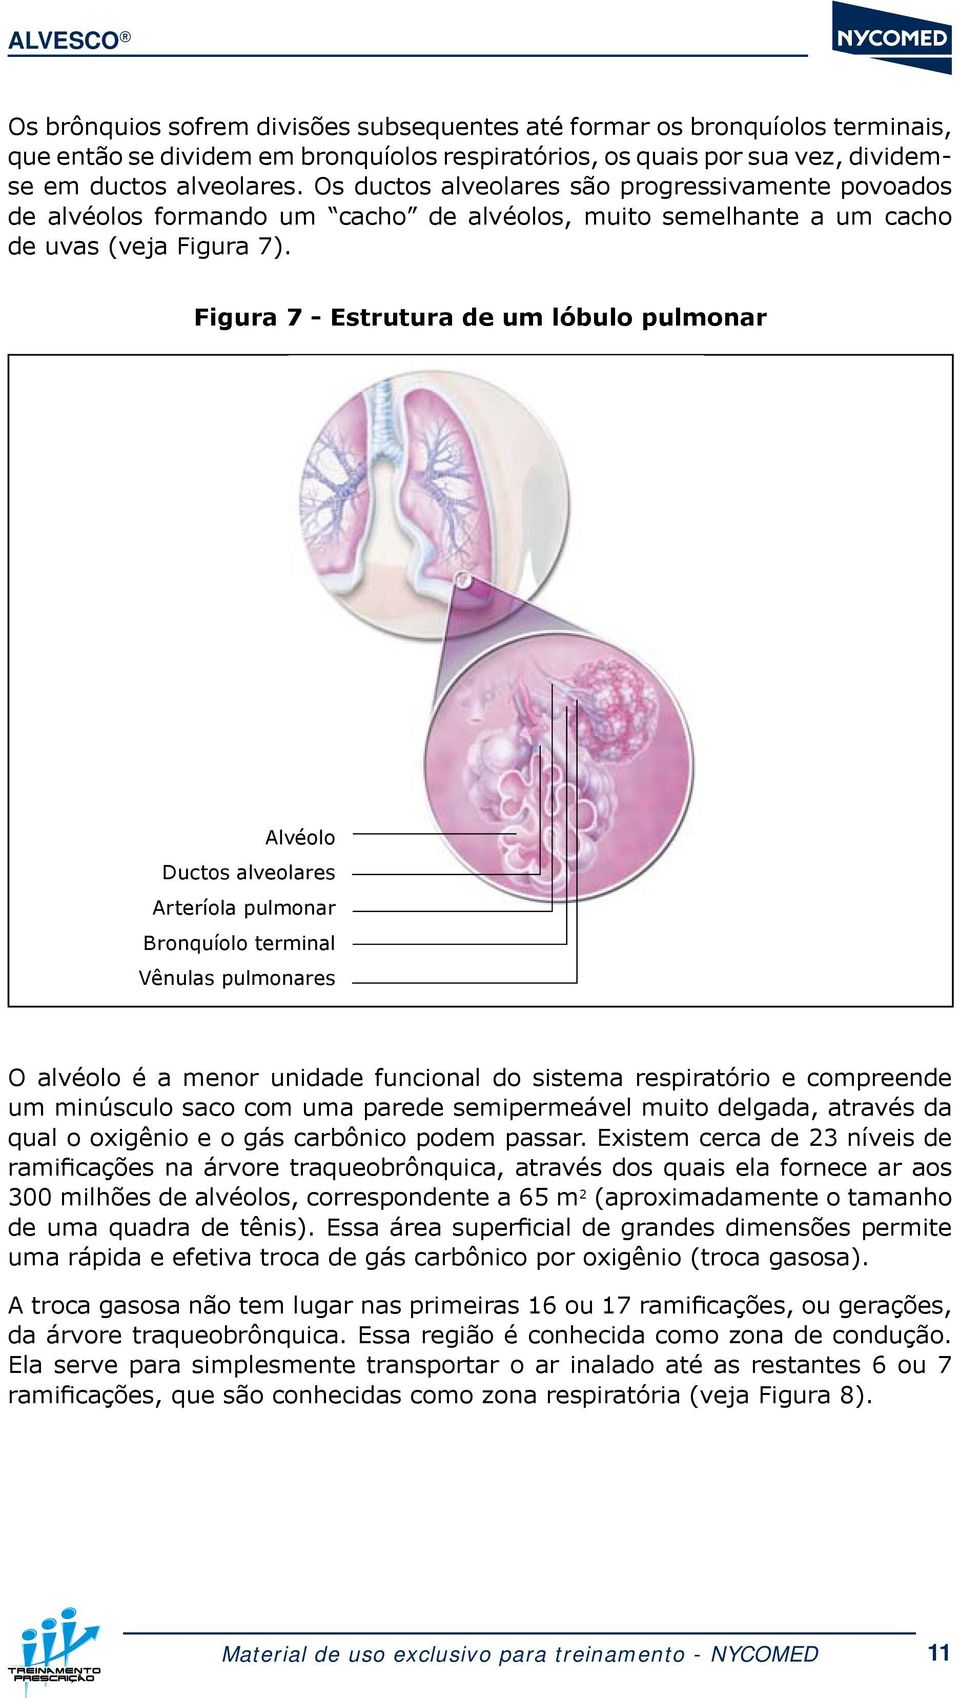 Figura 7 - Estrutura de um lóbulo pulmonar Alvéolo Ductos alveolares Arteríola pulmonar Bronquíolo terminal Vênulas pulmonares O alvéolo é a menor unidade funcional do sistema respiratório e